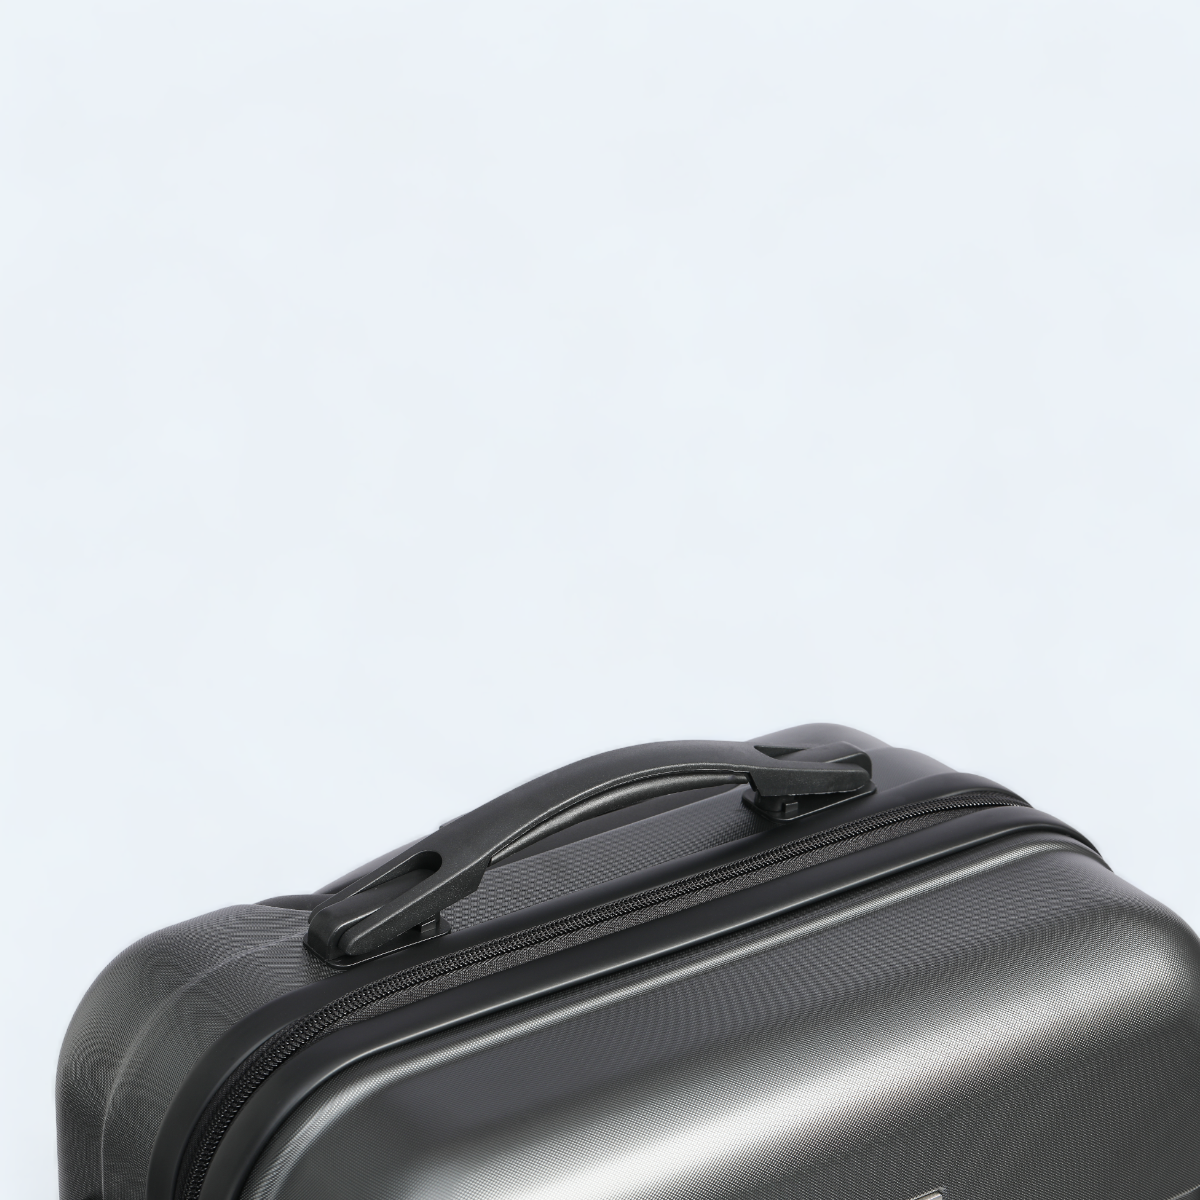  grå kufferts håndtag